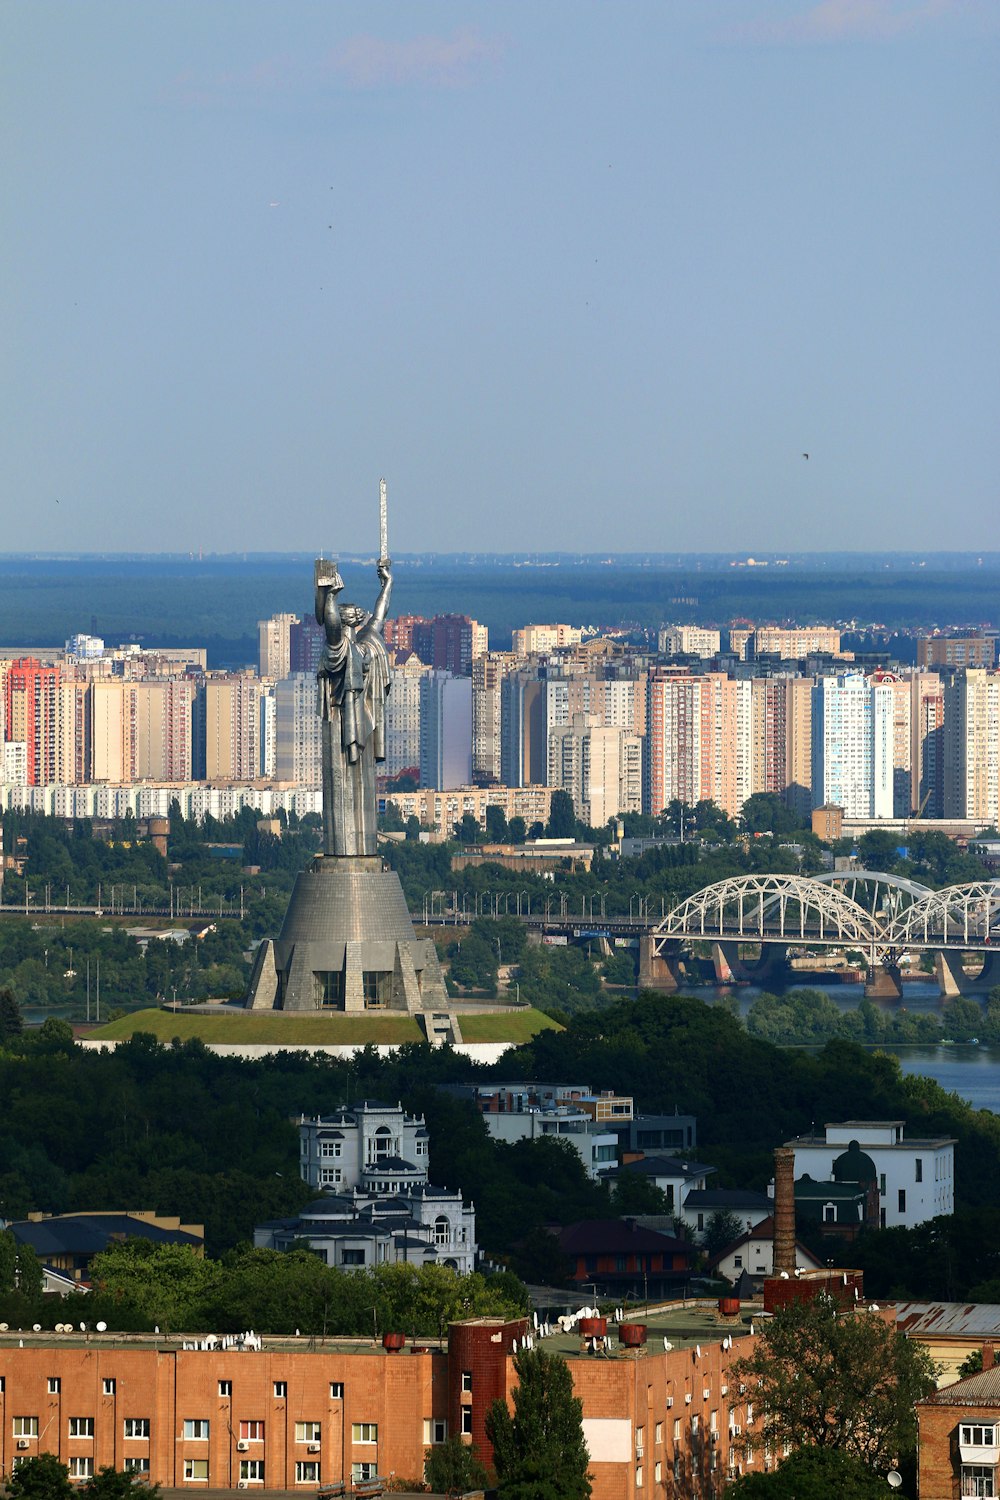 Fotografia aerea della statua vicino al ponte ad arco durante il giorno